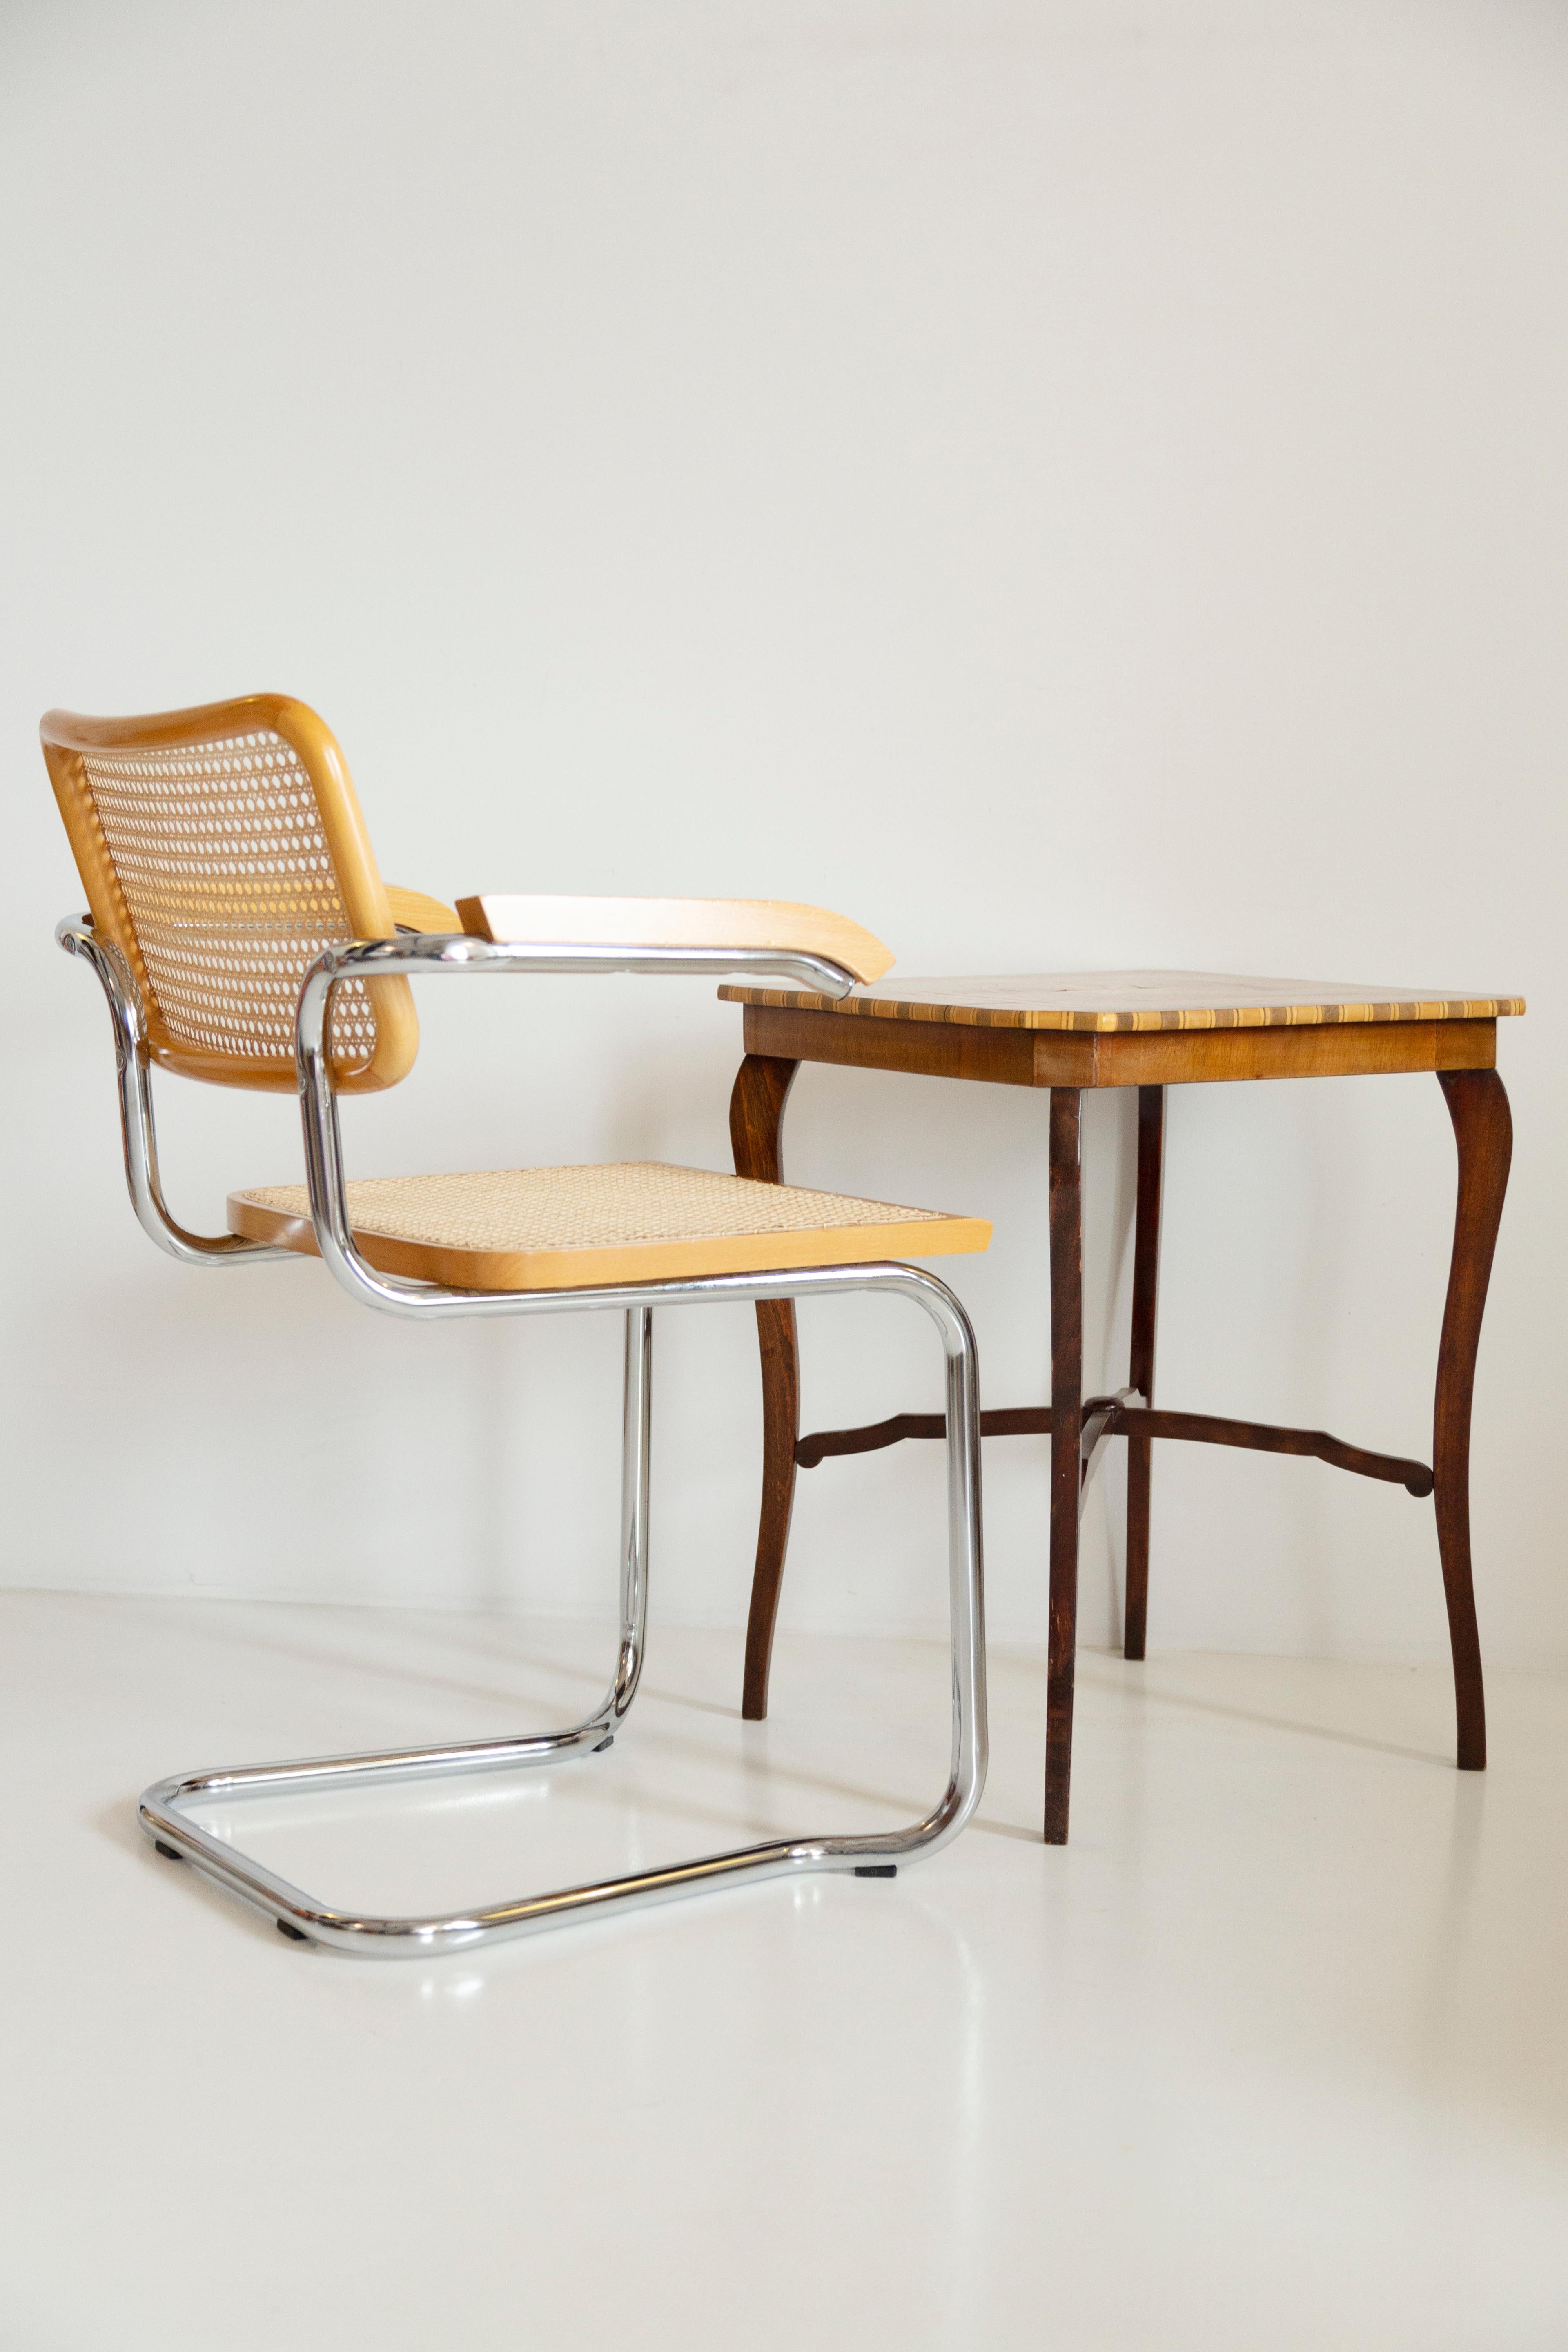 Schöner Stuhl aus Rattan, Samt und Holz aus der Jahrhundertmitte. 

Der wunderbare und weltberühmte Cesca-Stuhl wurde in den 1920er Jahren von Marcel Breuer entworfen. Der Cesca-Stuhl wird u.a. von Firmen wie Thonet oder Knoll hergestellt, wodurch